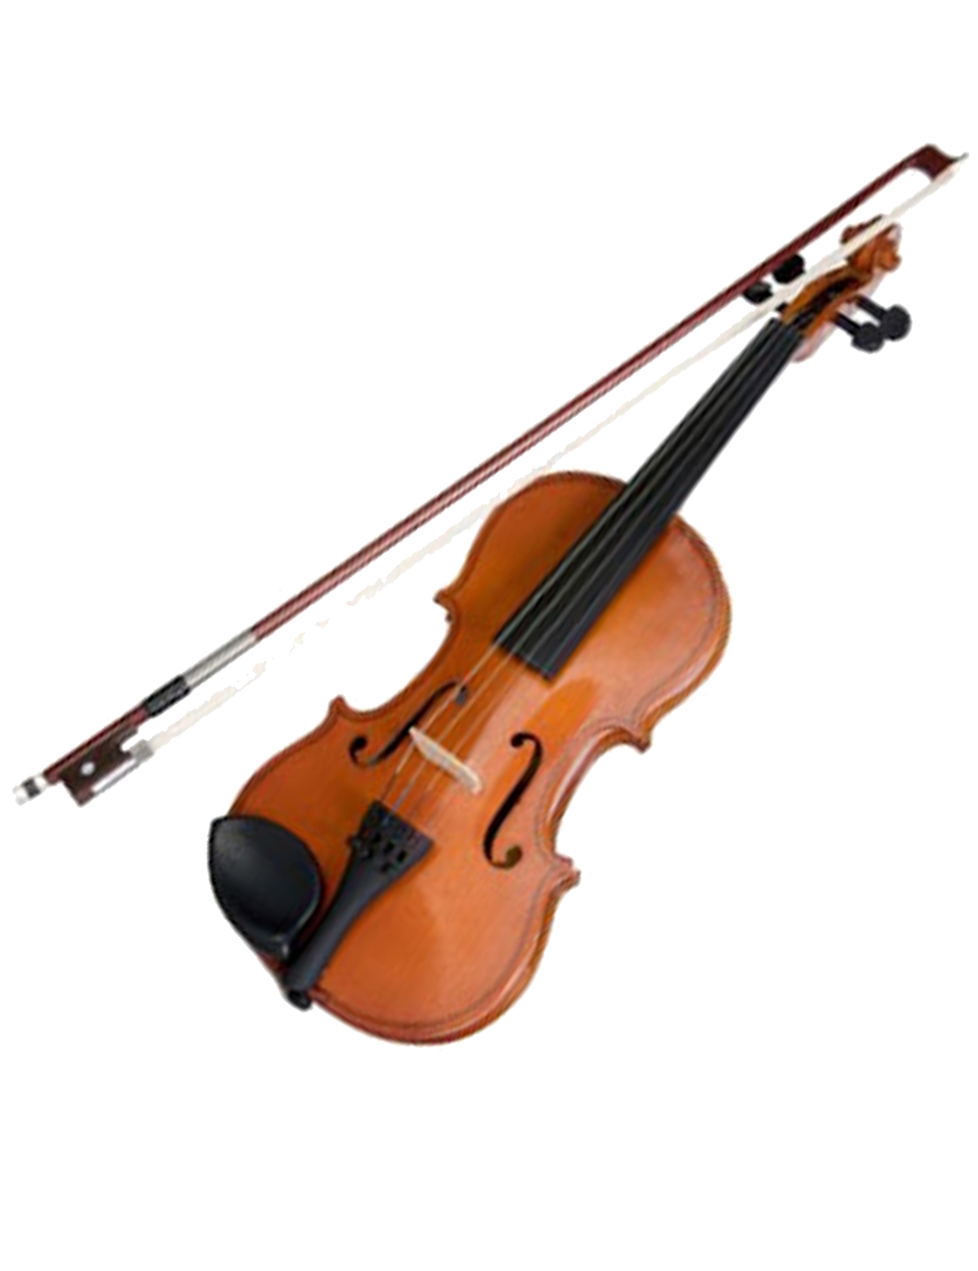 Violino e arco, instrumento musical